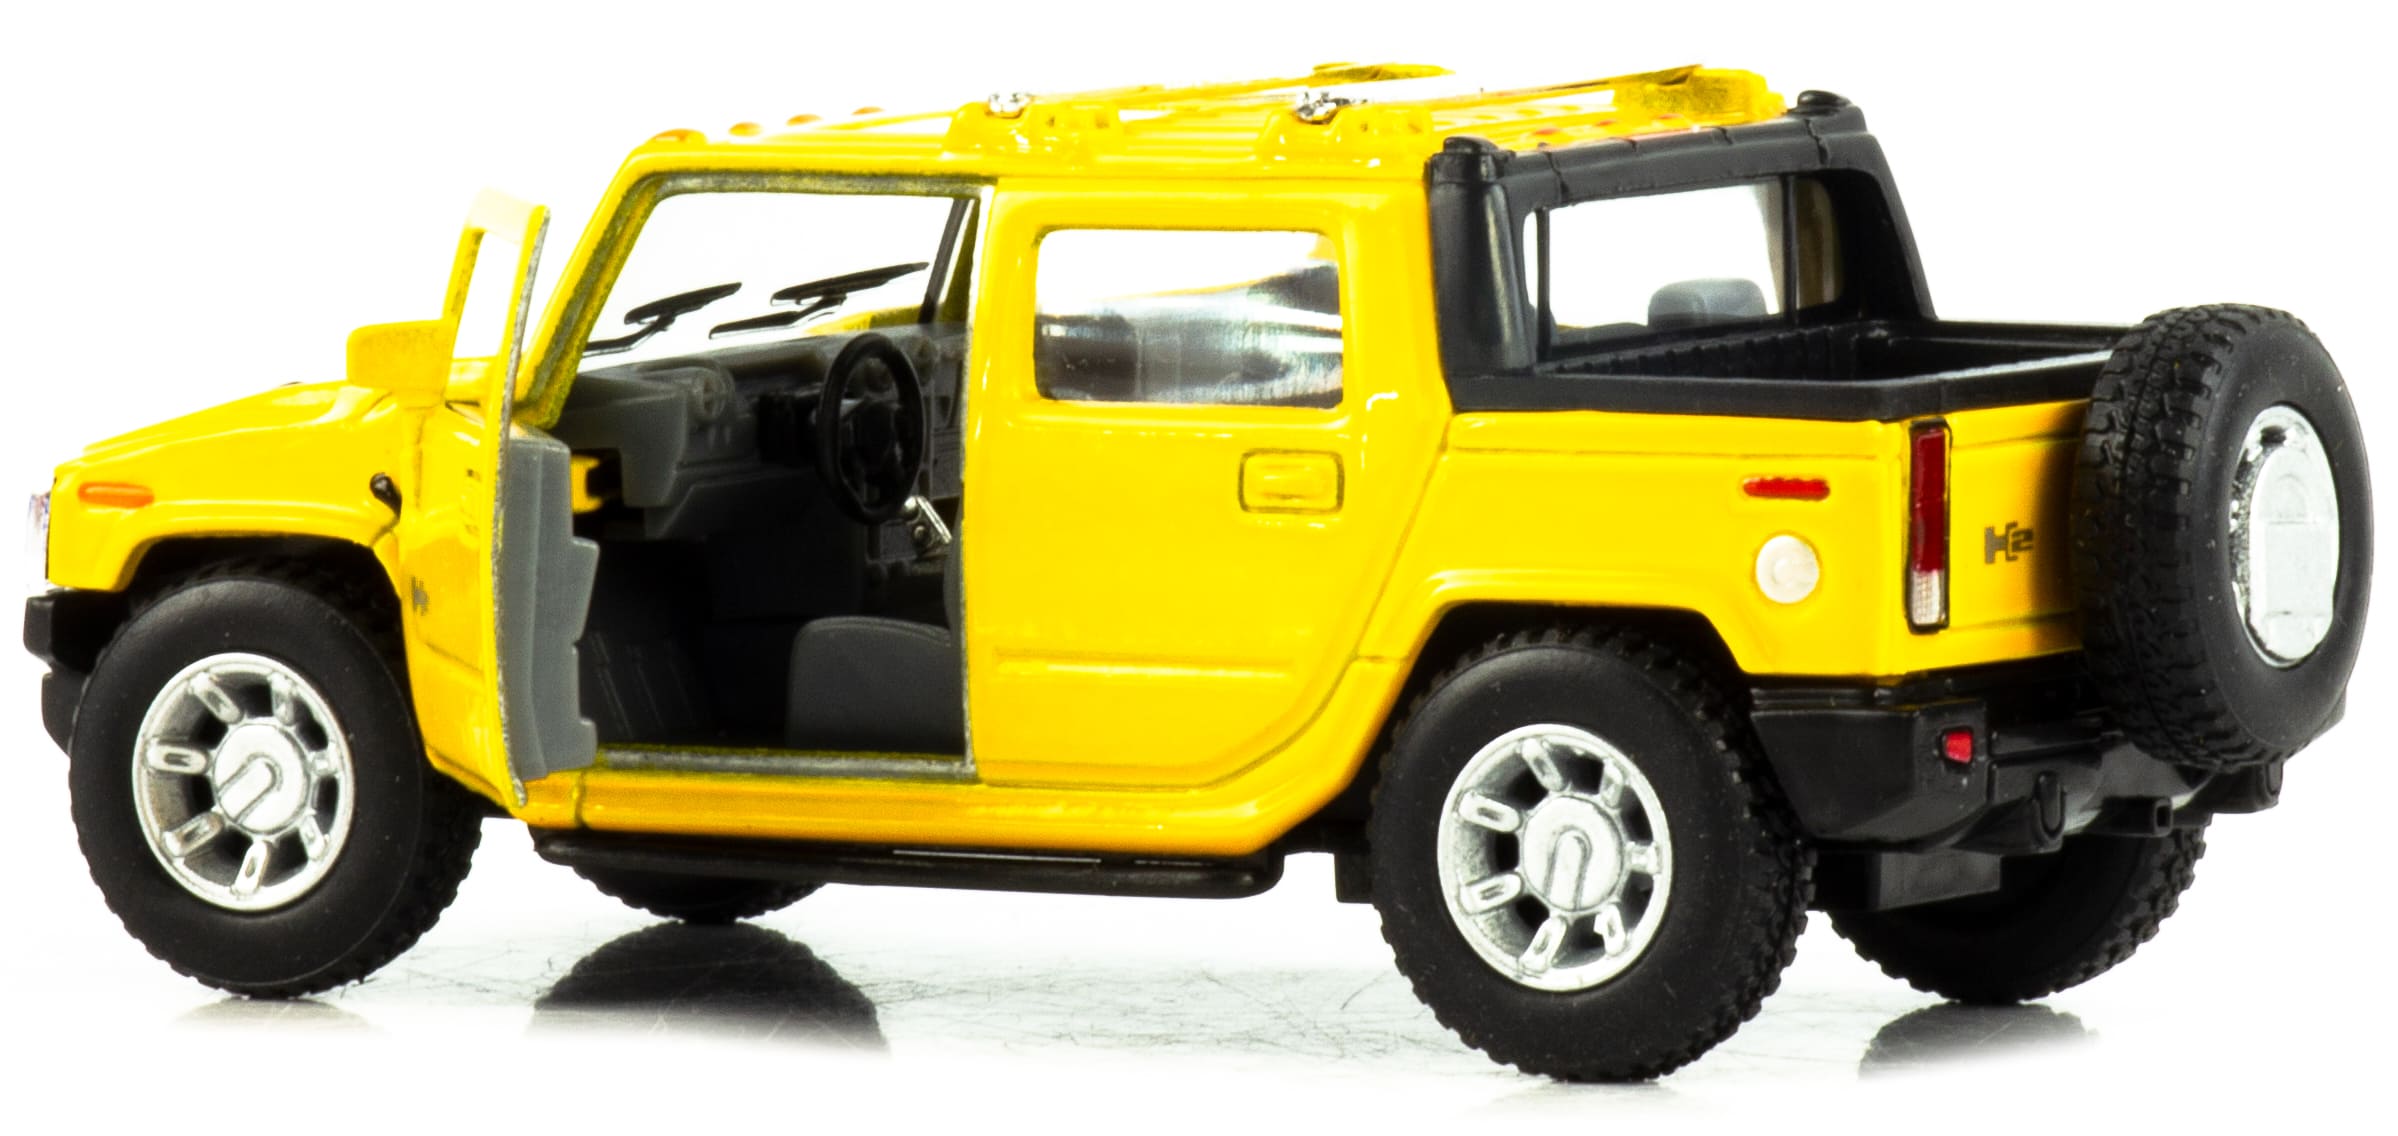 Металлическая машинка Kinsmart 1:40 «2005 Hummer H2 SUT» KT5097W инерционная в инд. коробке / Желтый